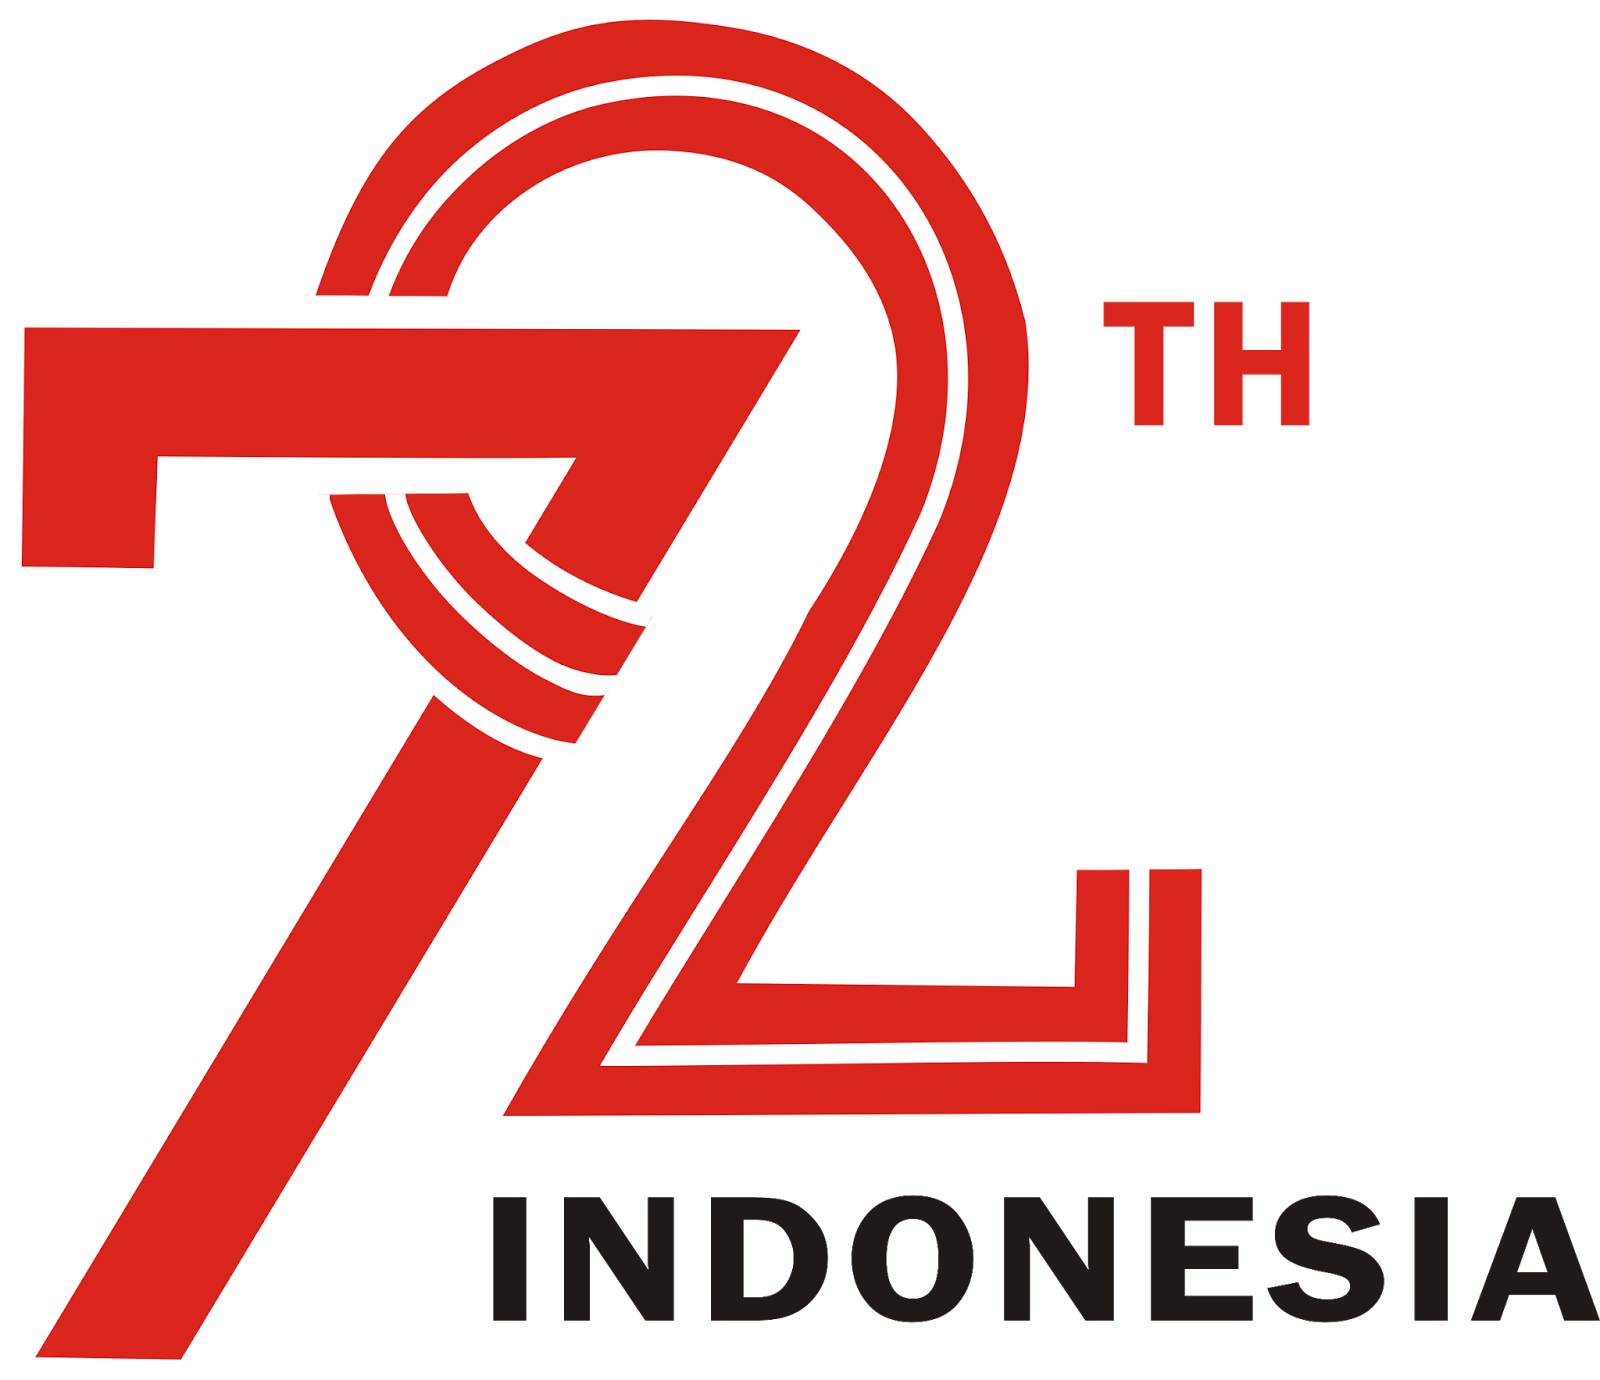 72 th Indonesia Merdeka Background PNG